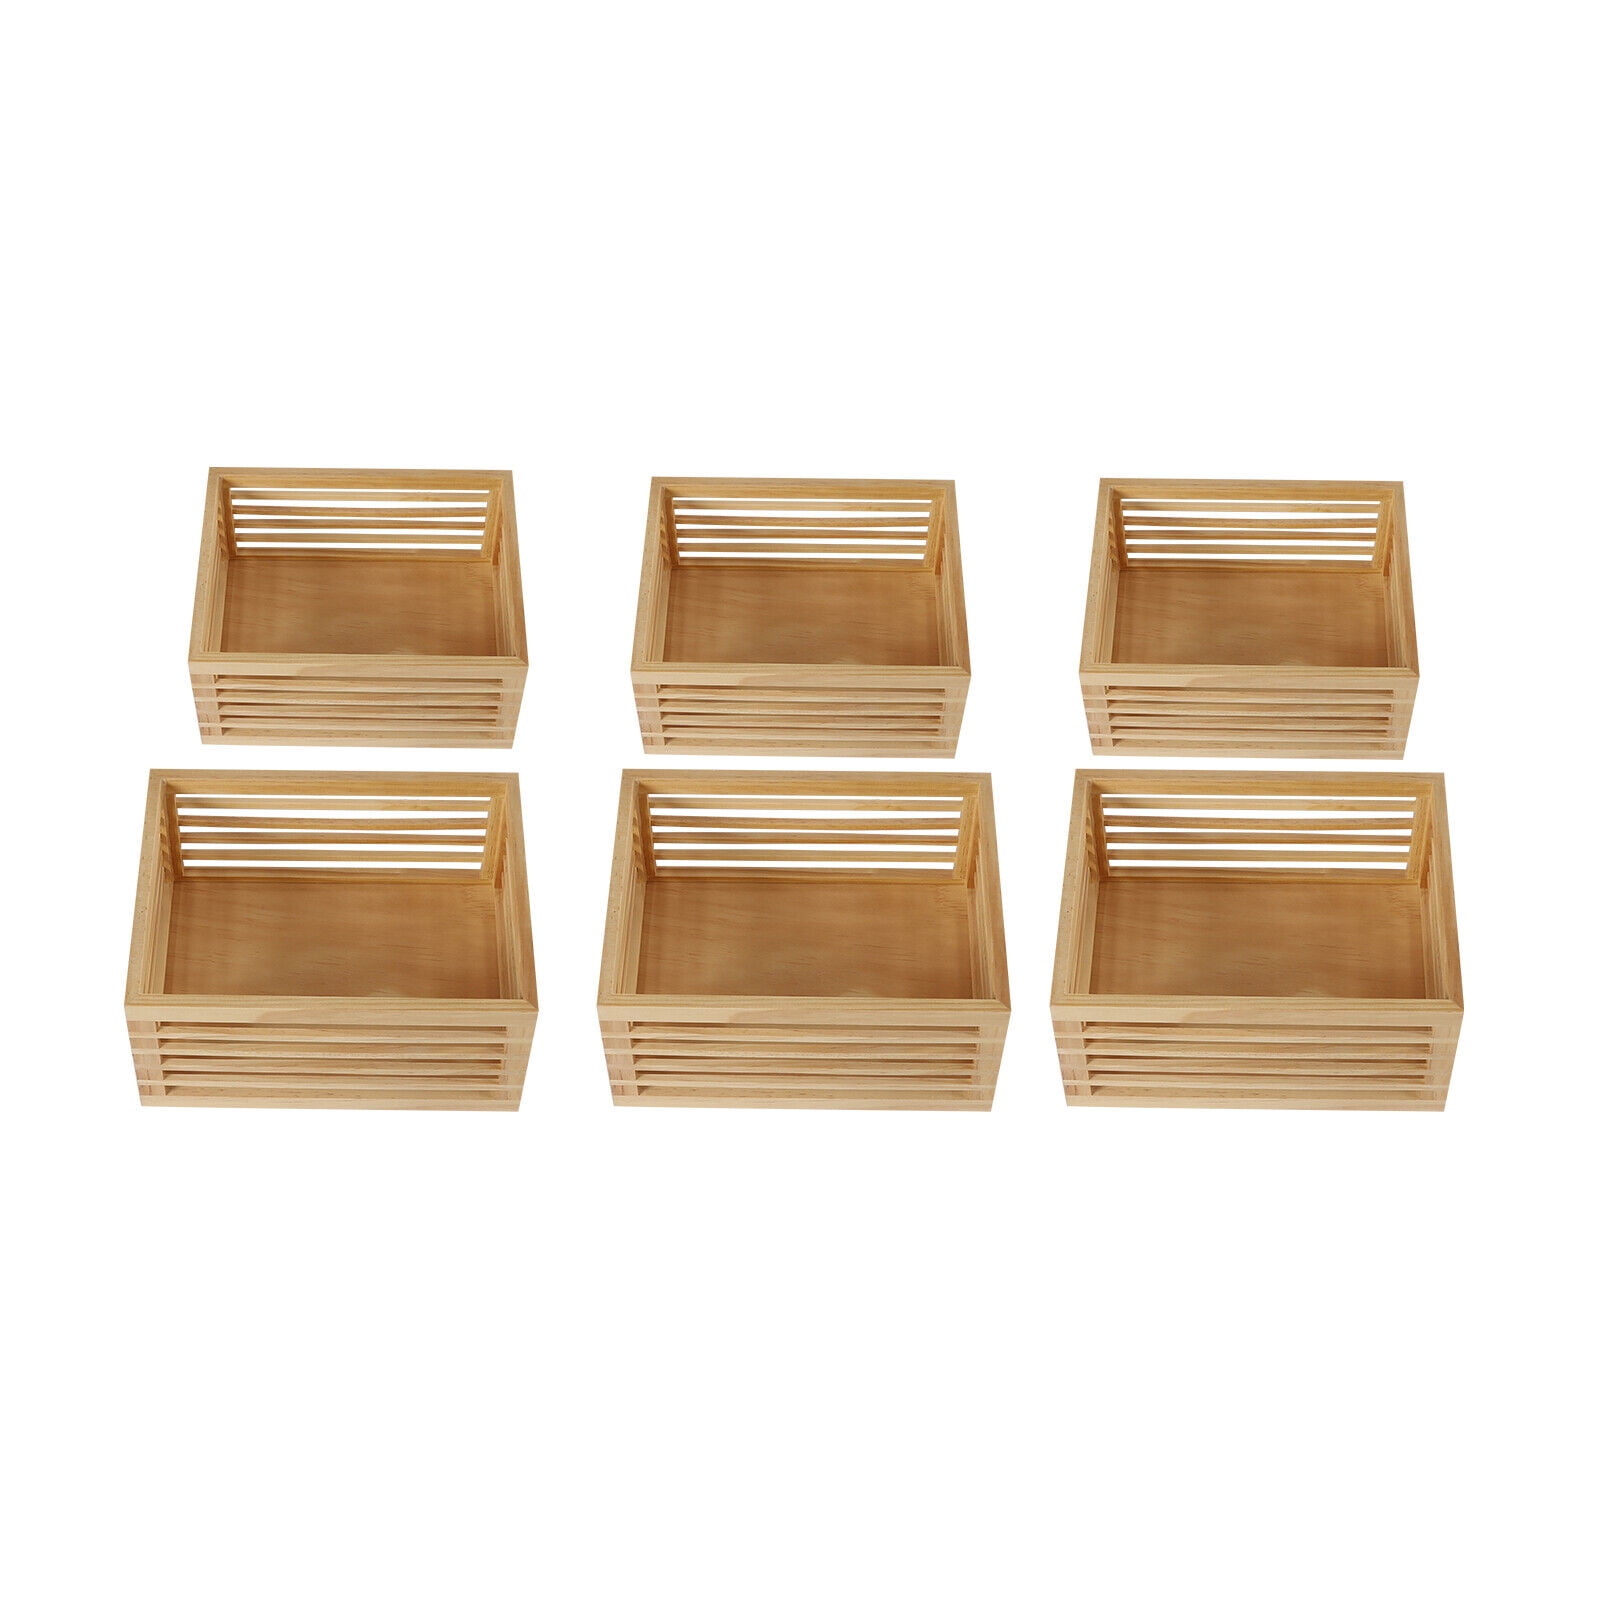 Bamboo Storage Containers  Boîte à thé en bois, Bocaux de conservation,  Boite à thé